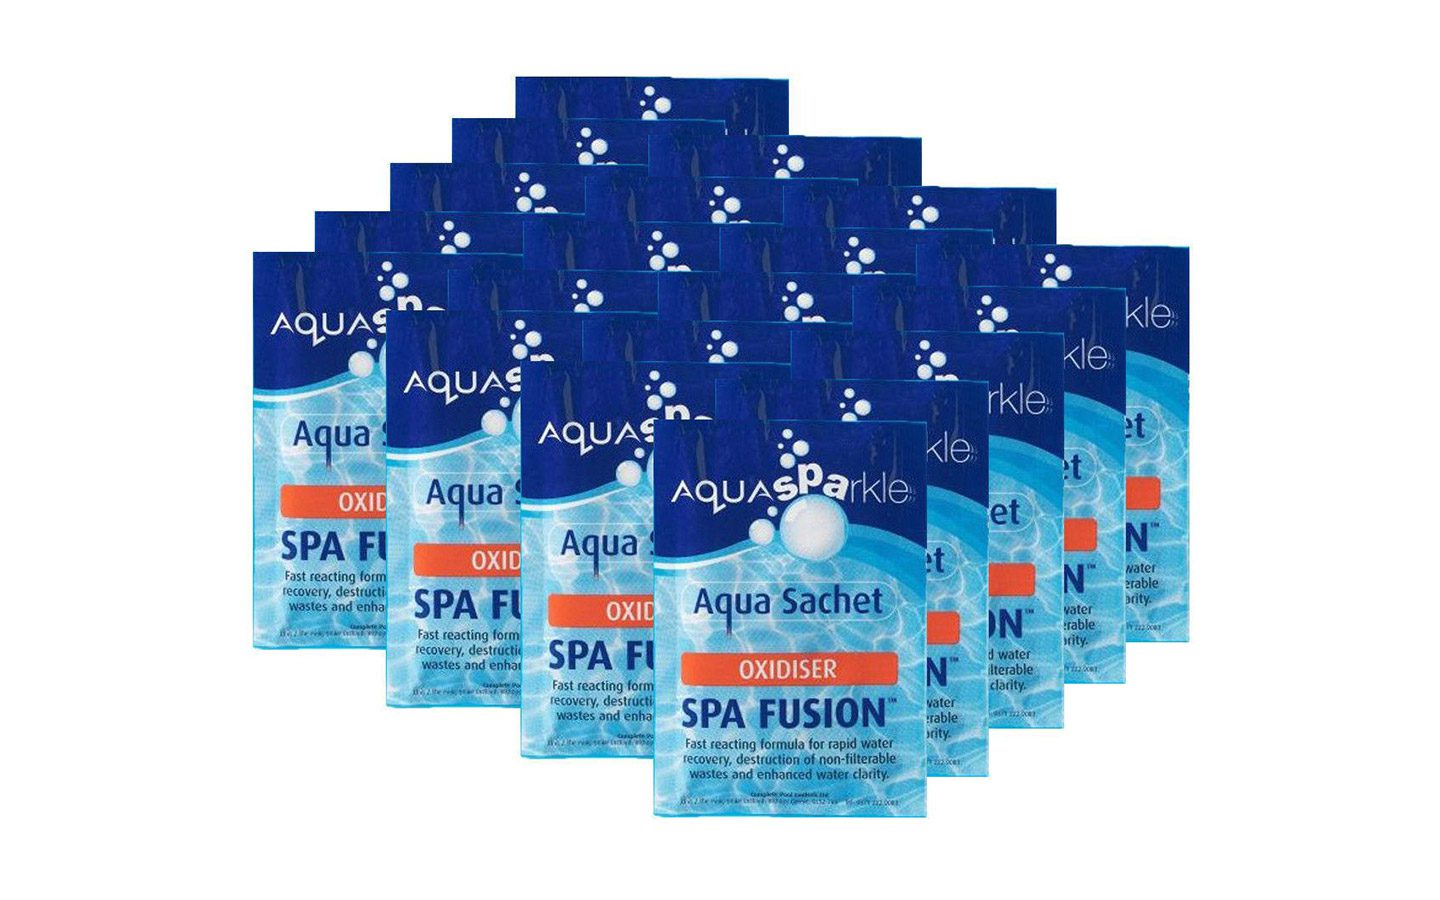 AquaSparkle Spa Fusion